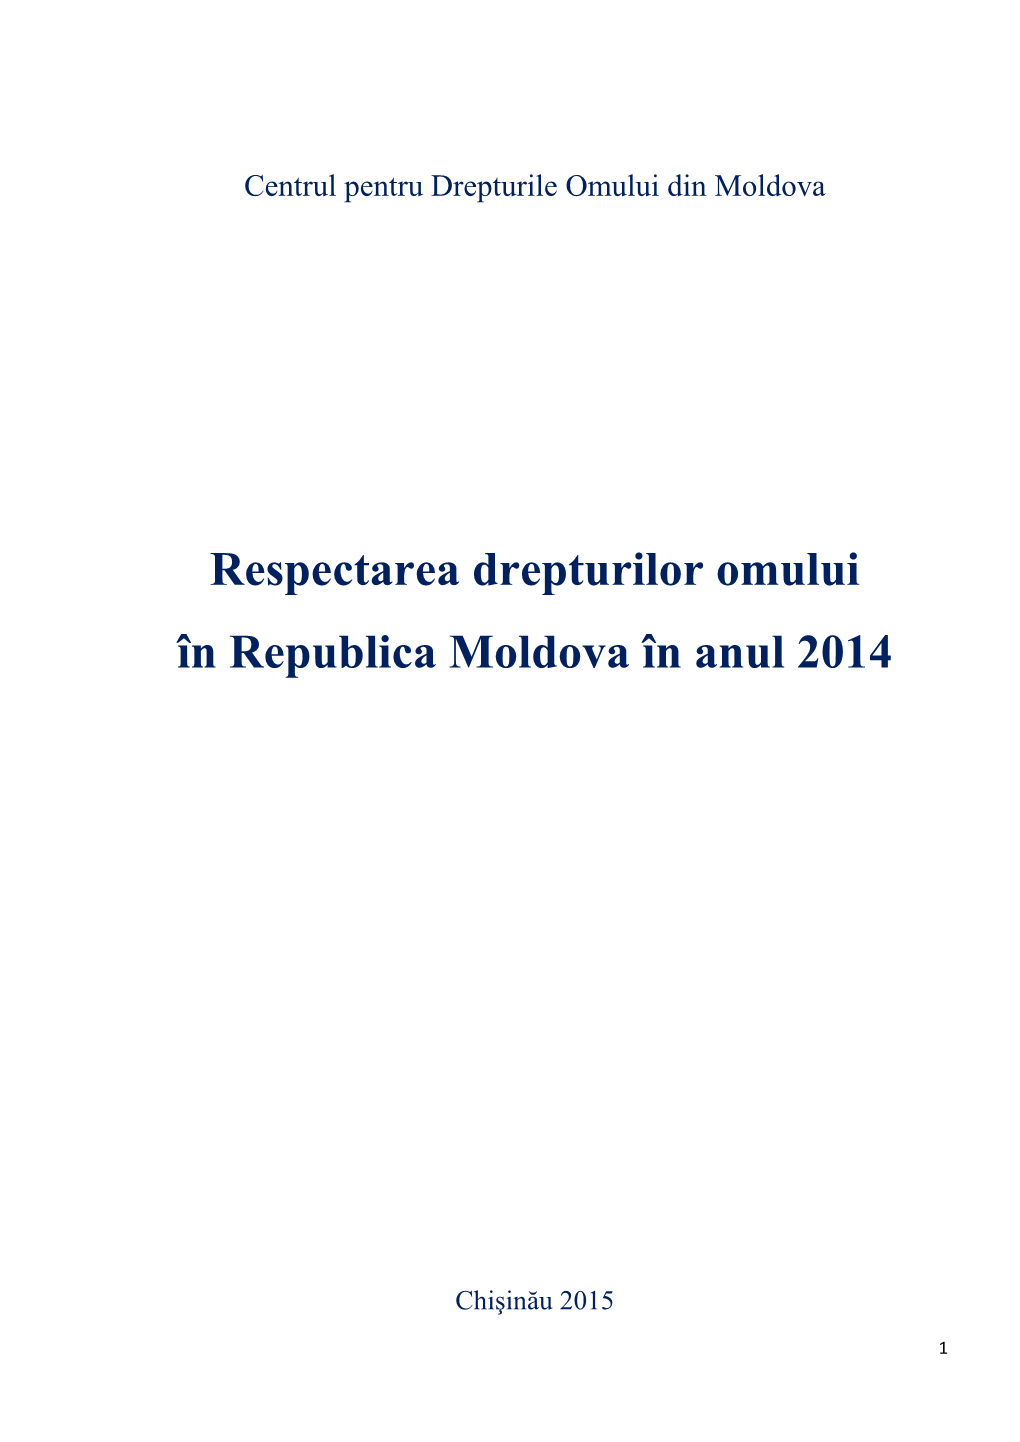 Respectarea Drepturilor Omului În Republica Moldova În Anul 2014